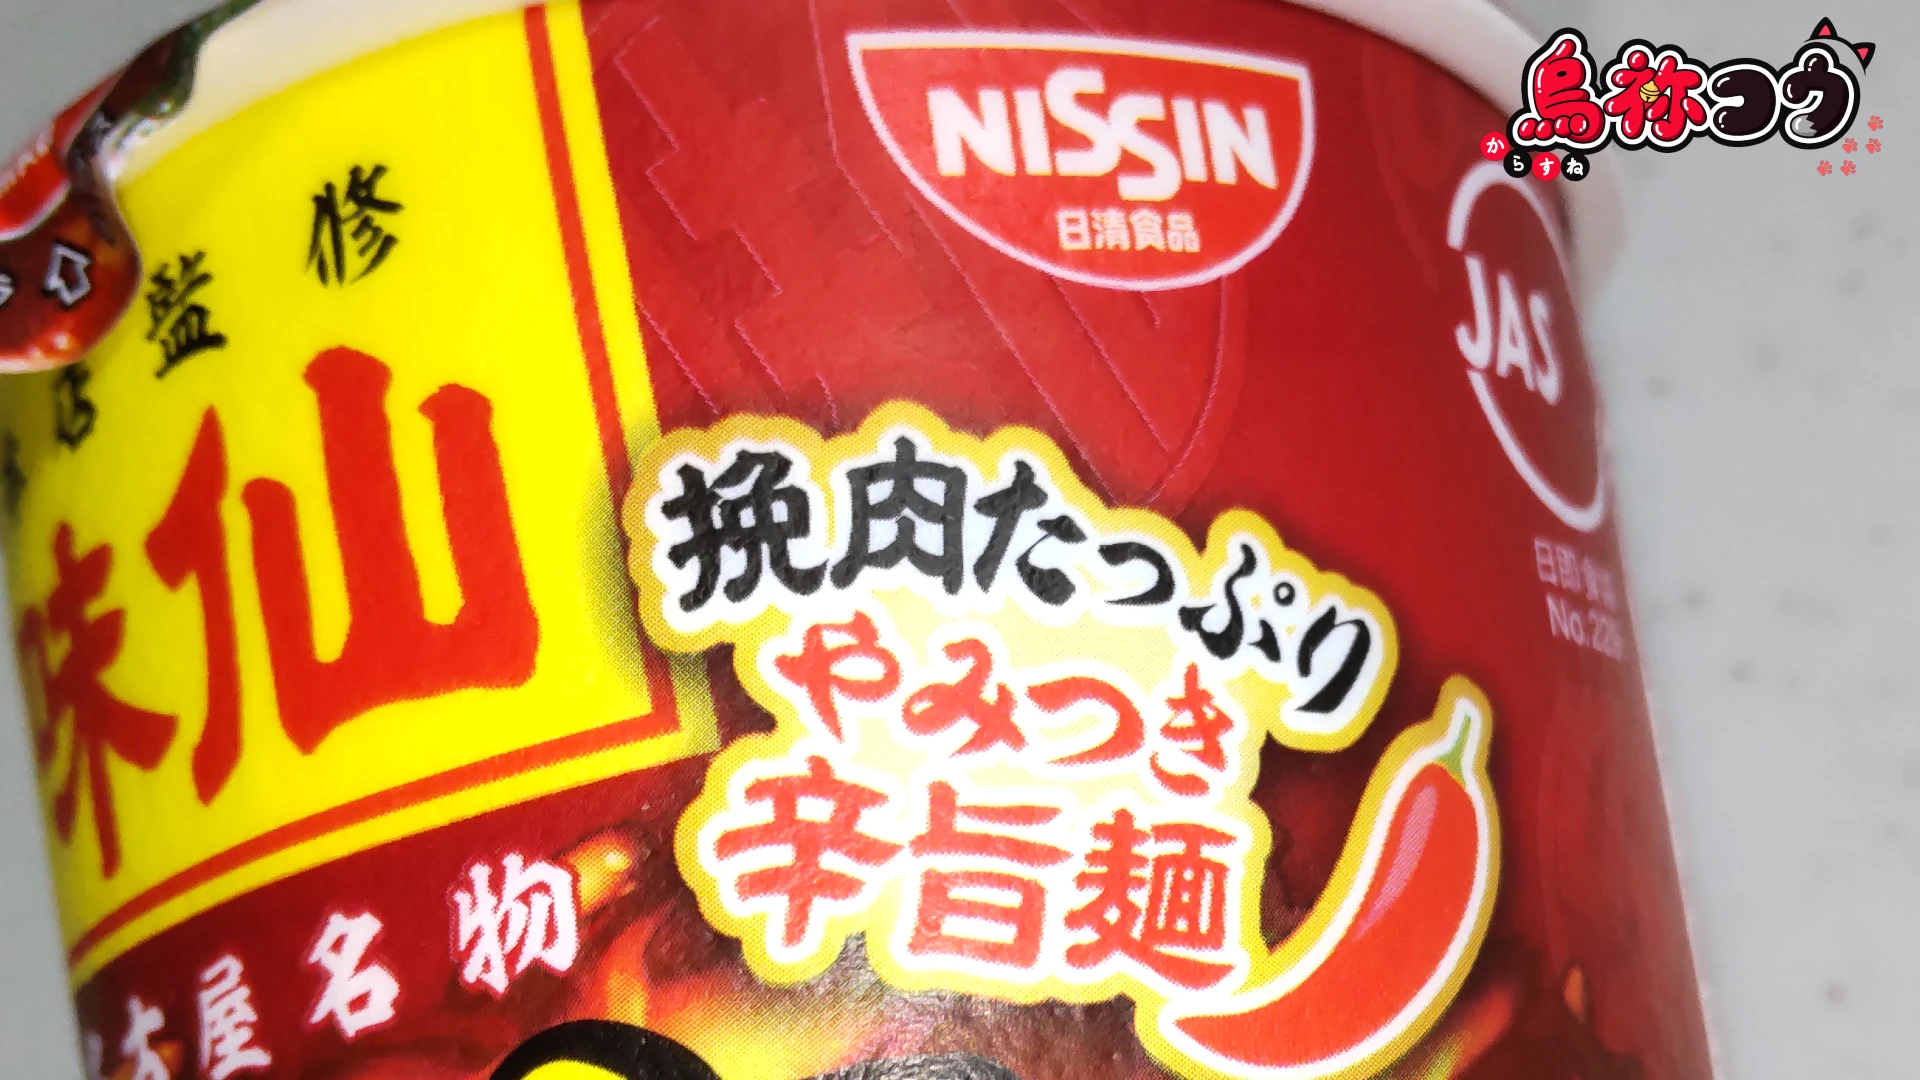 ファミマルの味仙 台湾ラーメンのパッケージに書かれた「挽肉たっぷりやみつき辛旨麺」の表記です